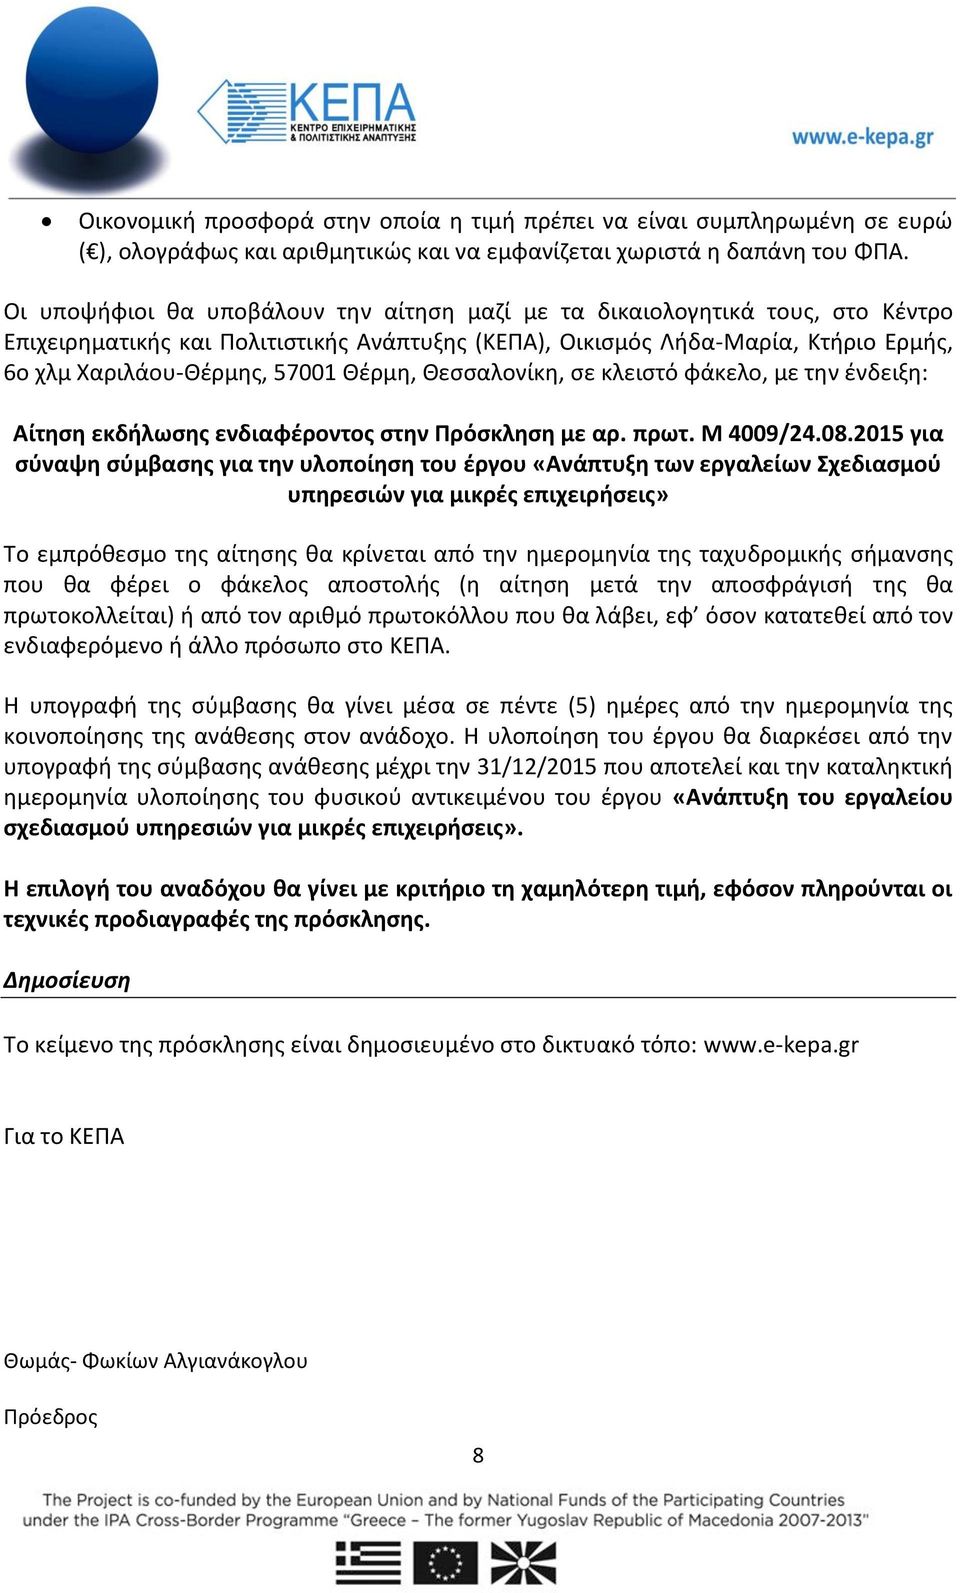 Θέρμη, Θεσσαλονίκη, σε κλειστό φάκελο, με την ένδειξη: Αίτηση εκδήλωσης ενδιαφέροντος στην Πρόσκληση με αρ. πρωτ. Μ 4009/24.08.